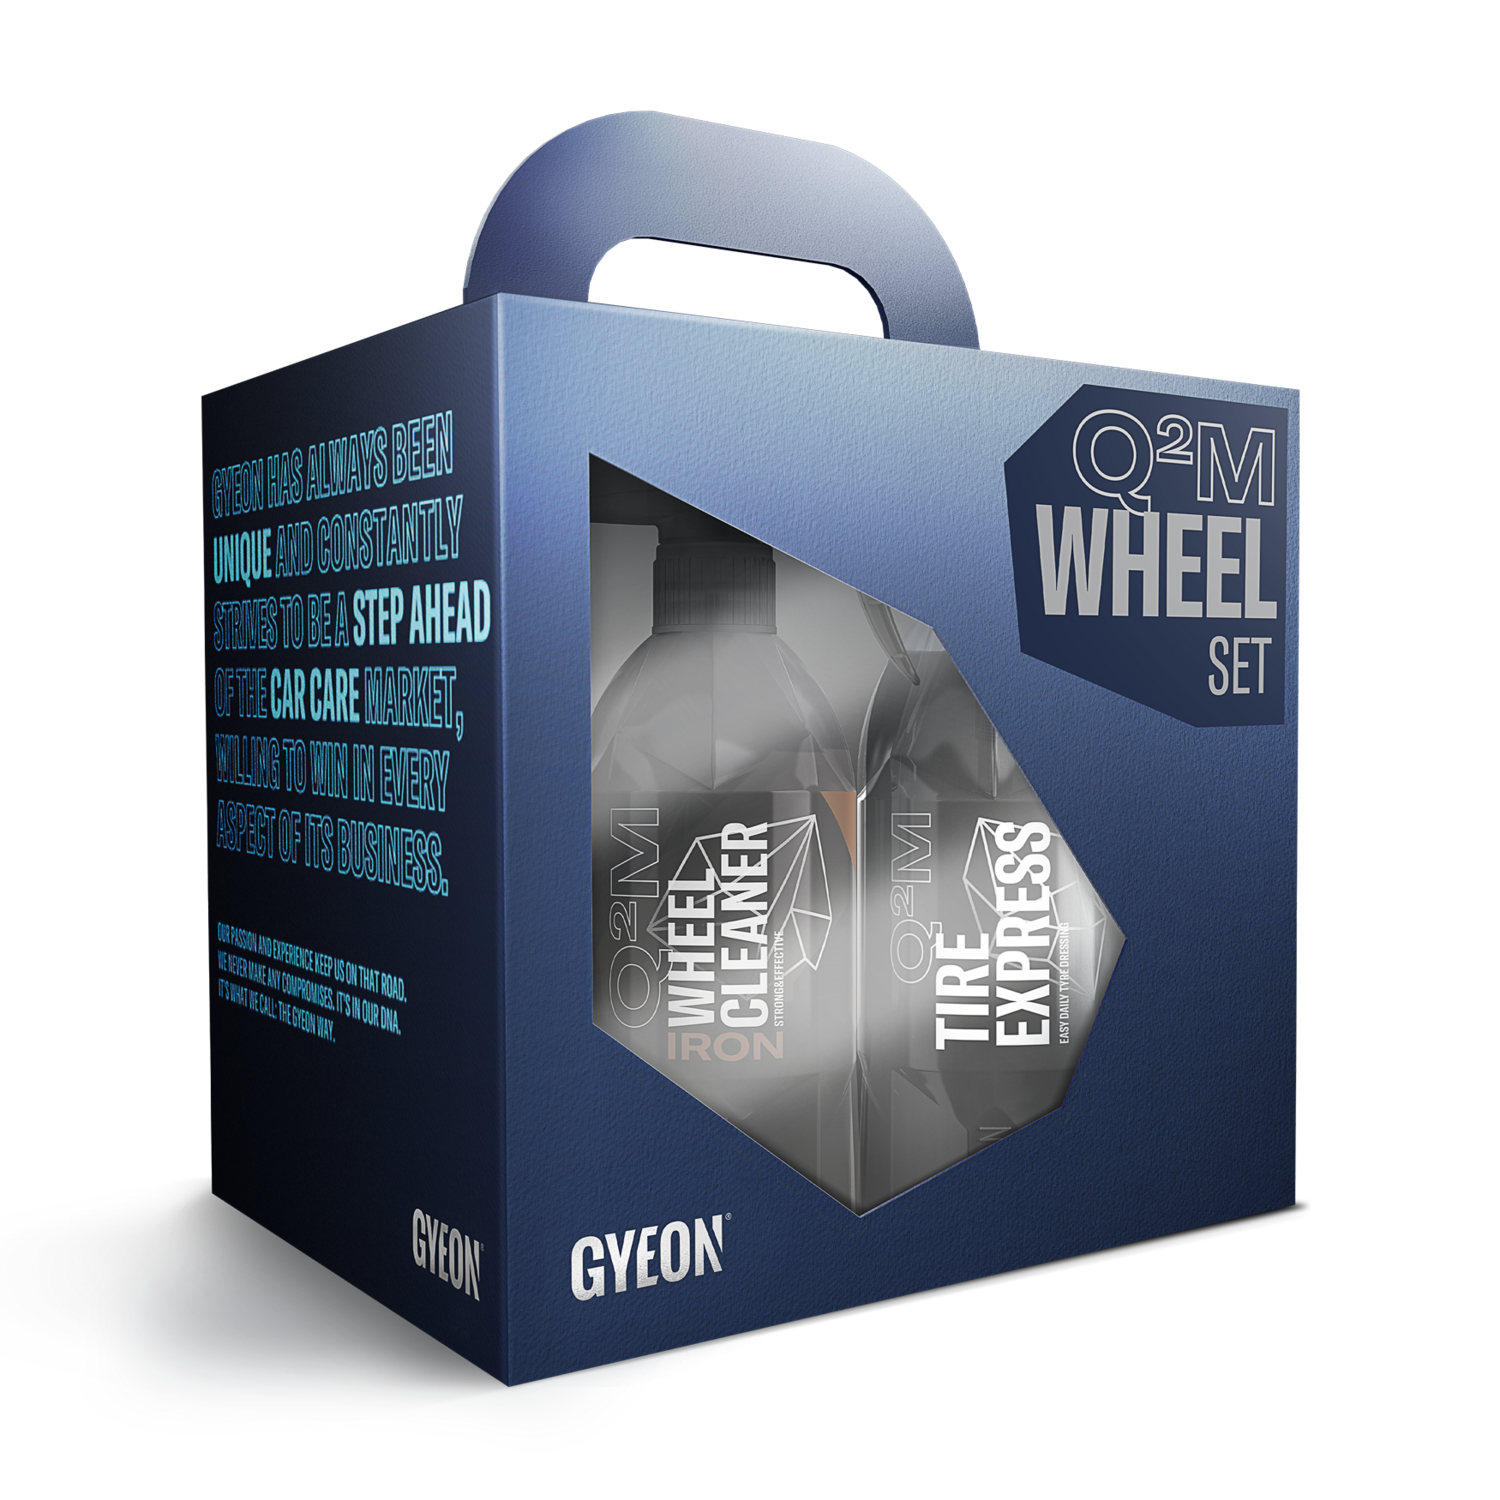 Q²M Wheel Set - Bundle Box